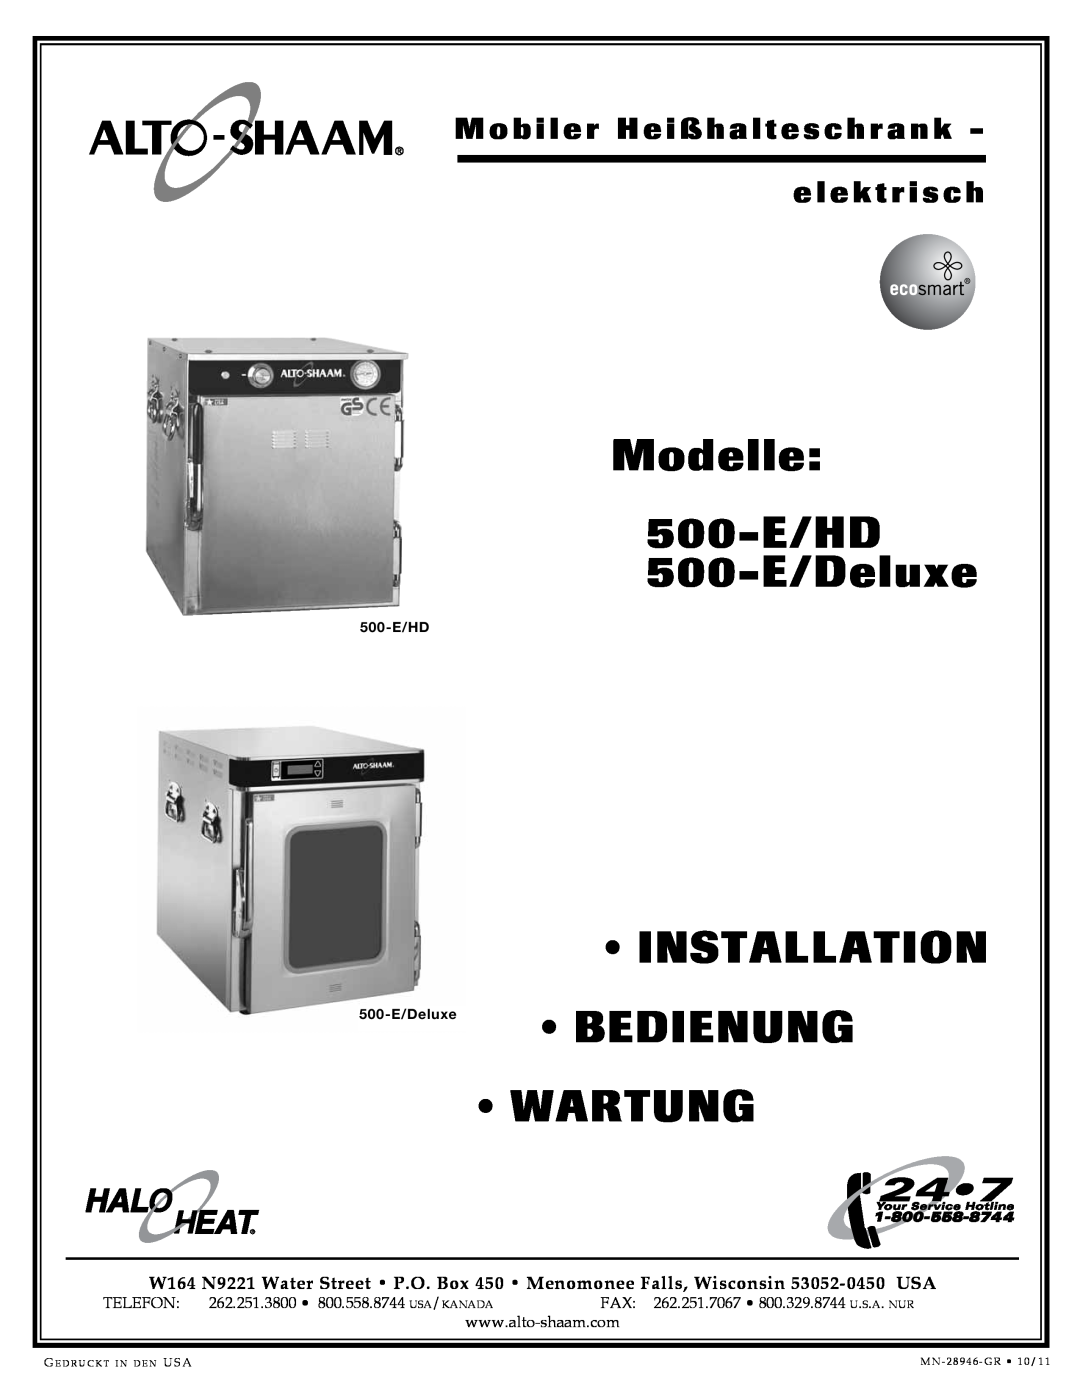 Alto-Shaam 500-E/HD manual Modelle, 500-E/Deluxe, Installation, Bedienung, Wartung, e l e k t r i s c h, Telefon 